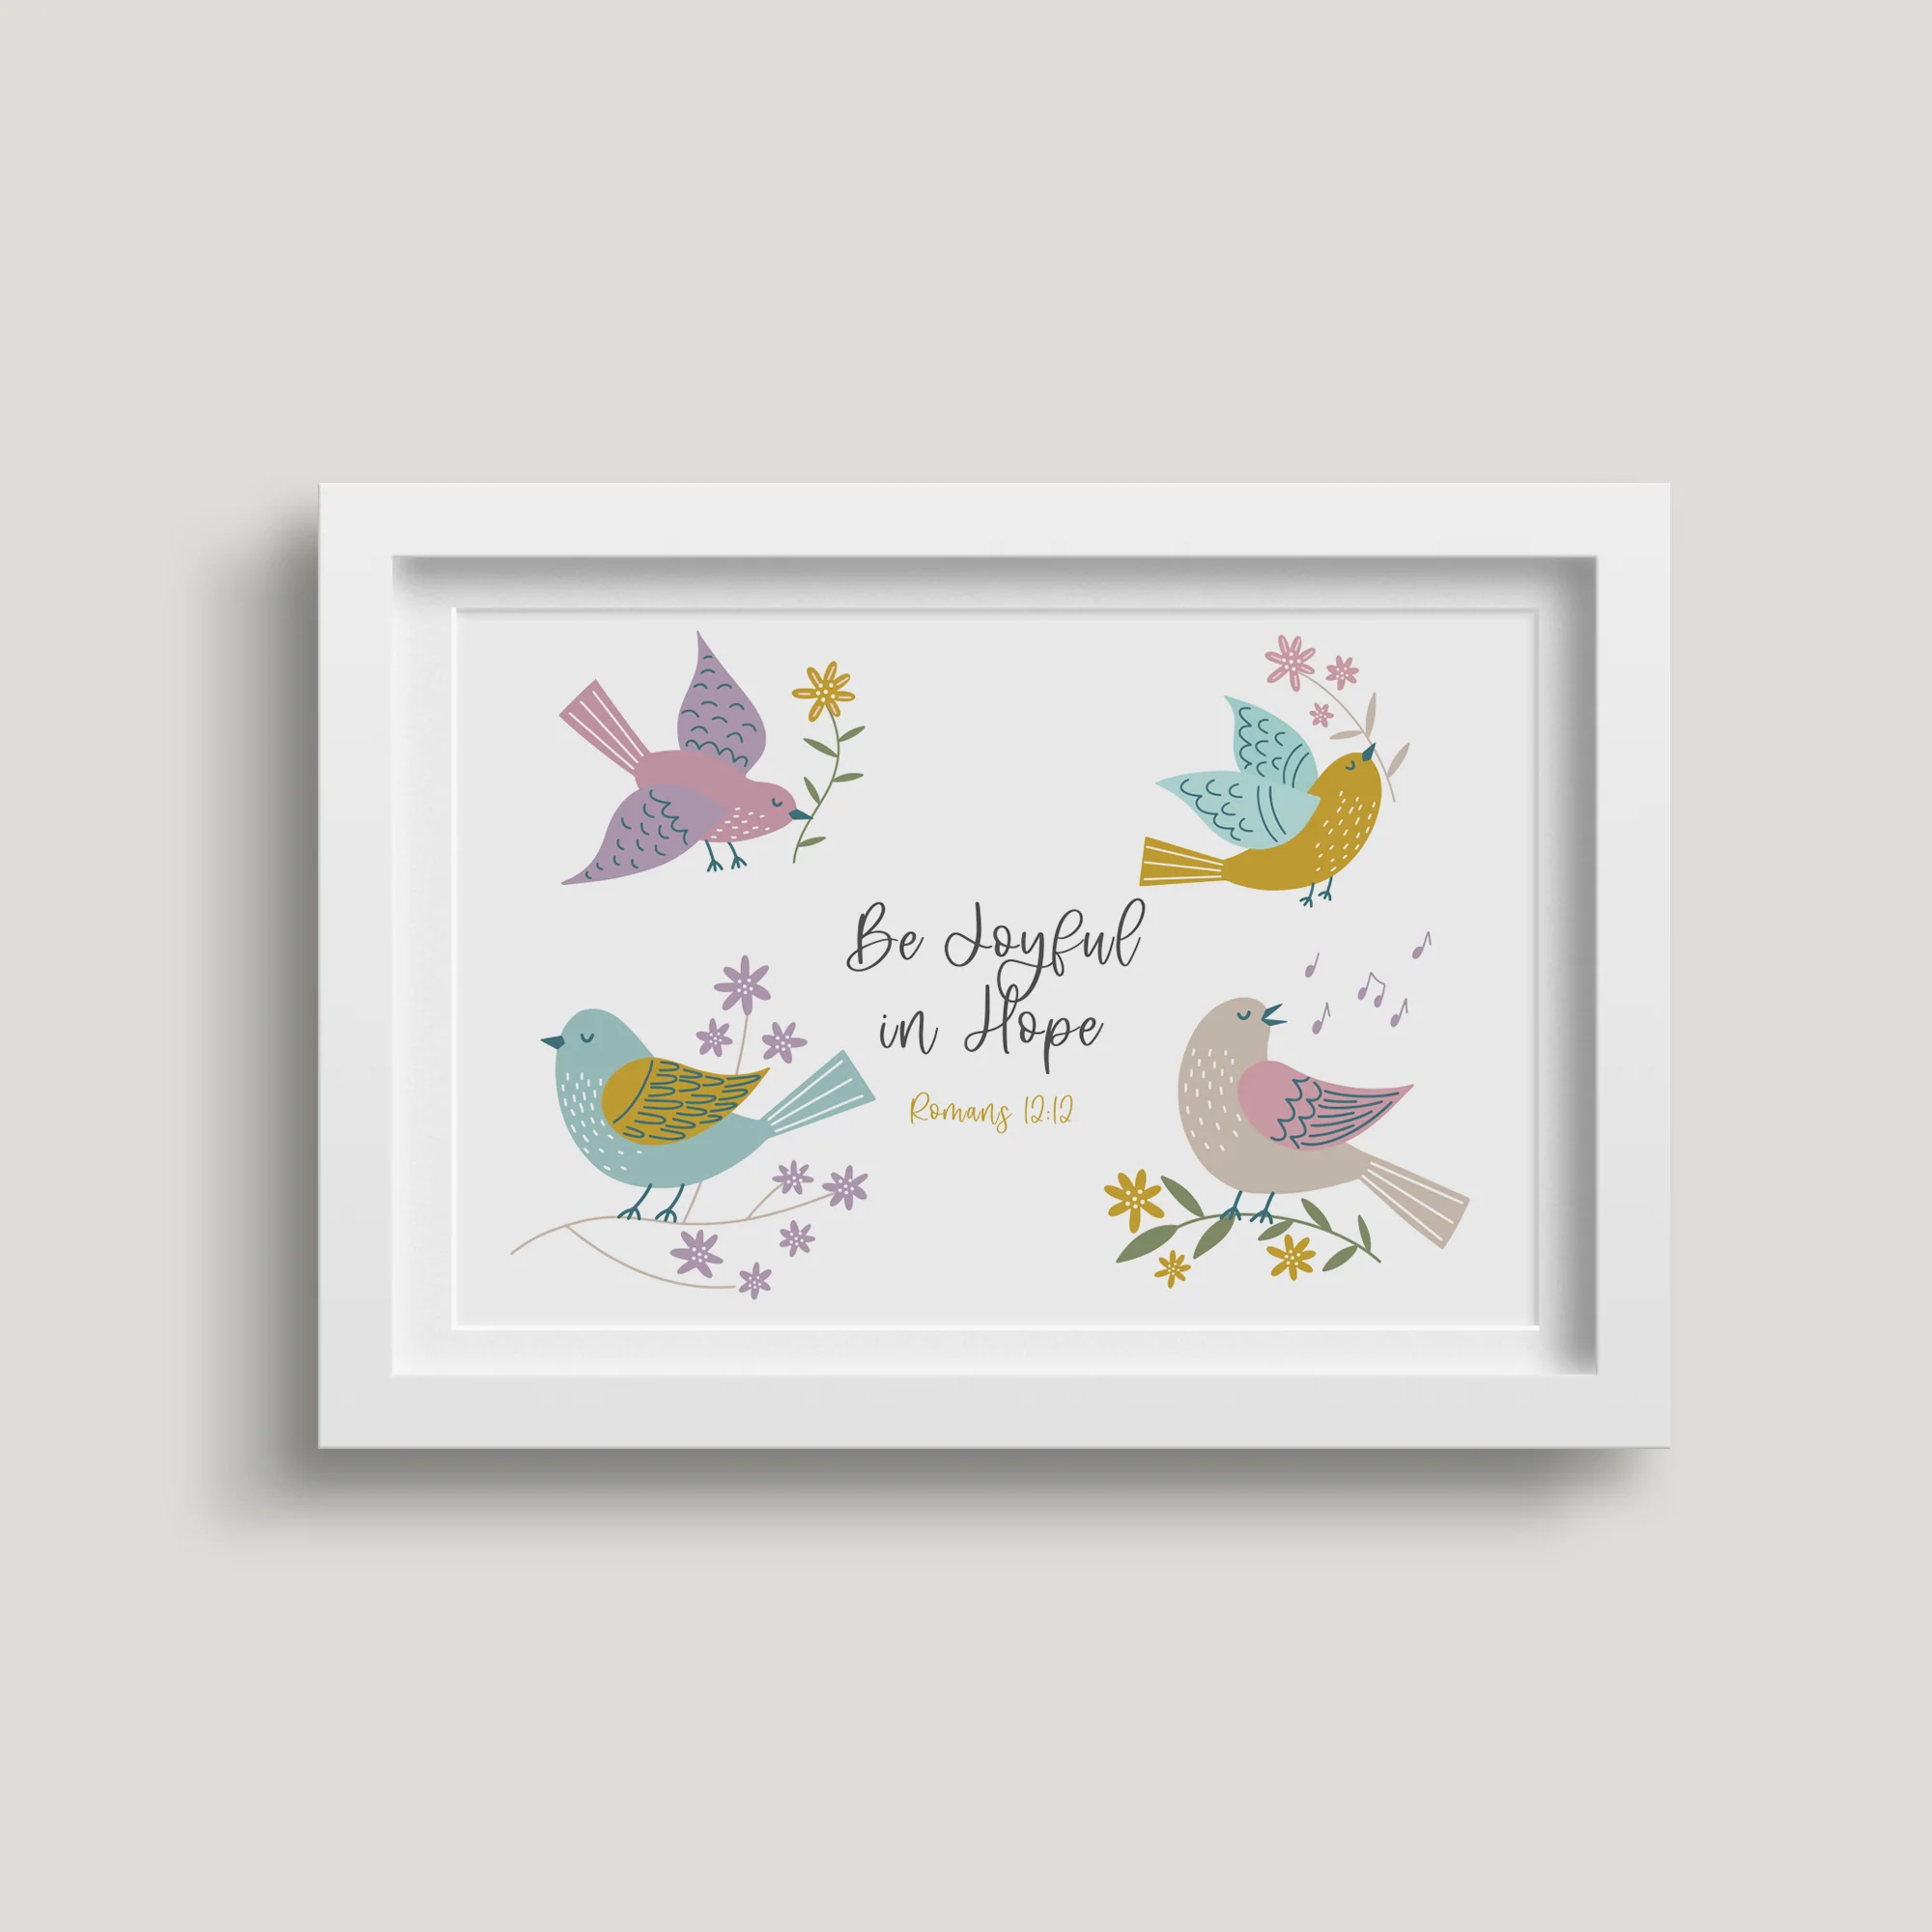 'Be Joyful in Hope' (Birds of Joy) 7x5 White Framed Print